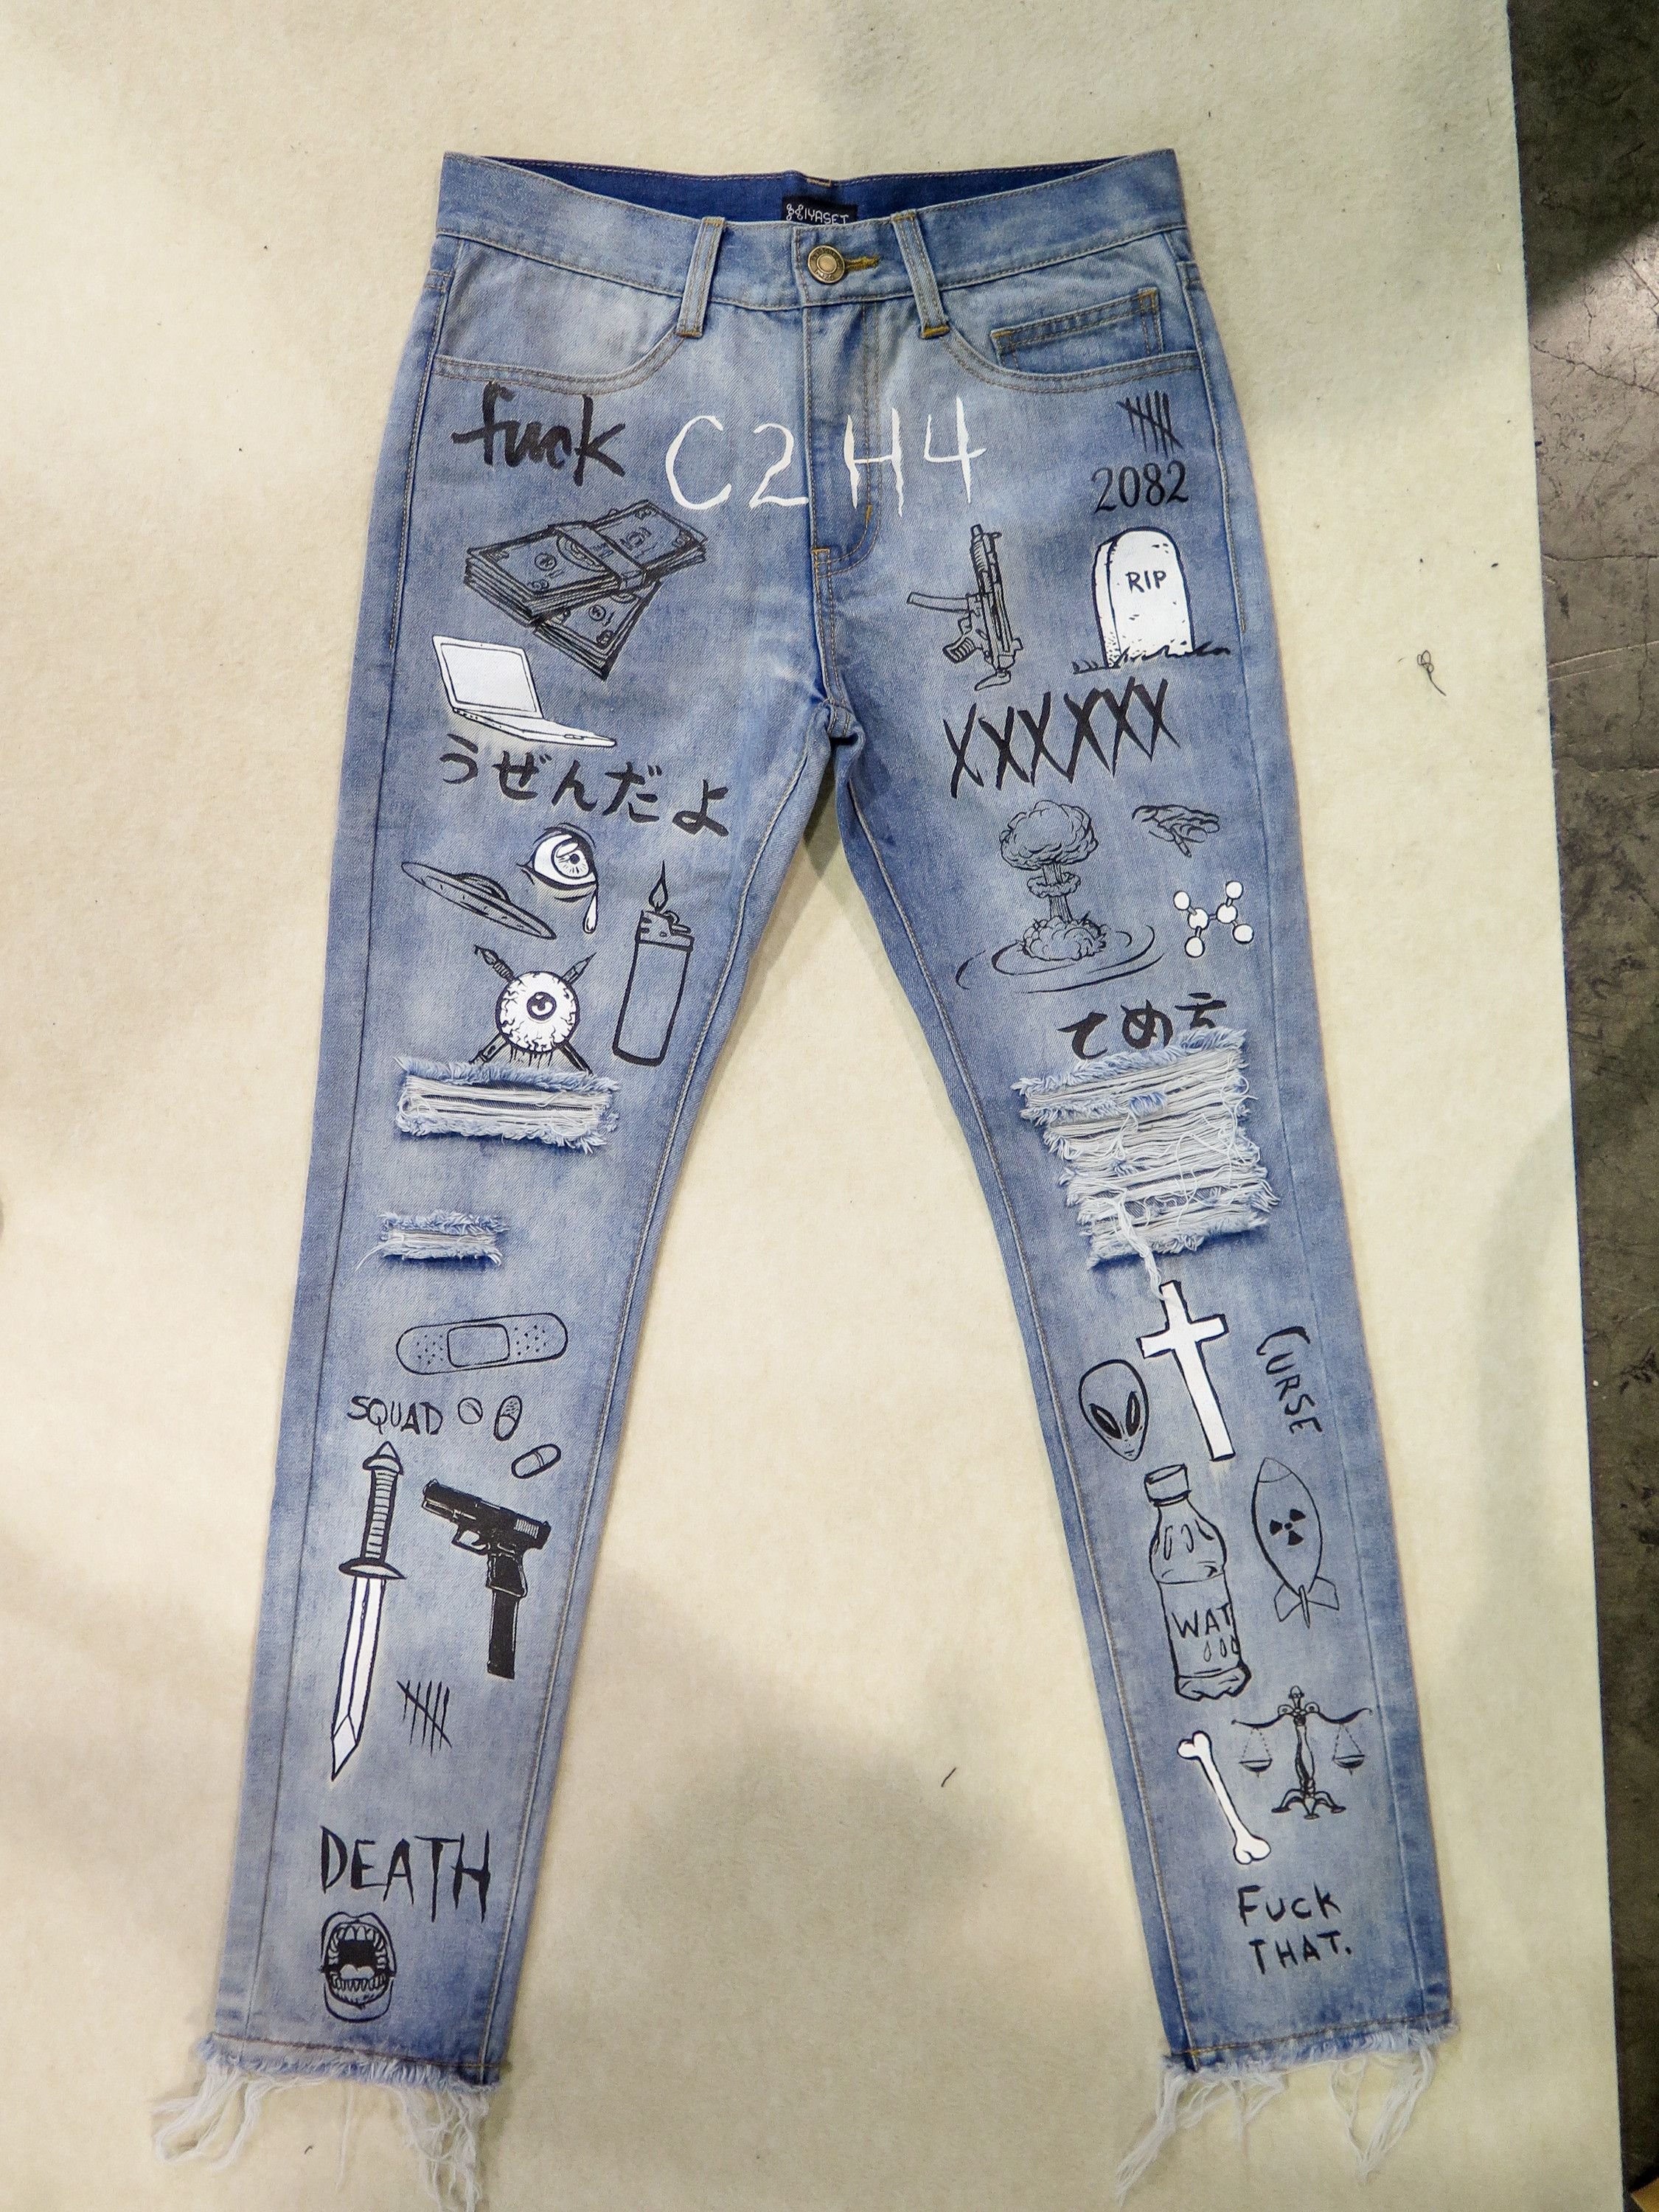 Расписанные джинсы